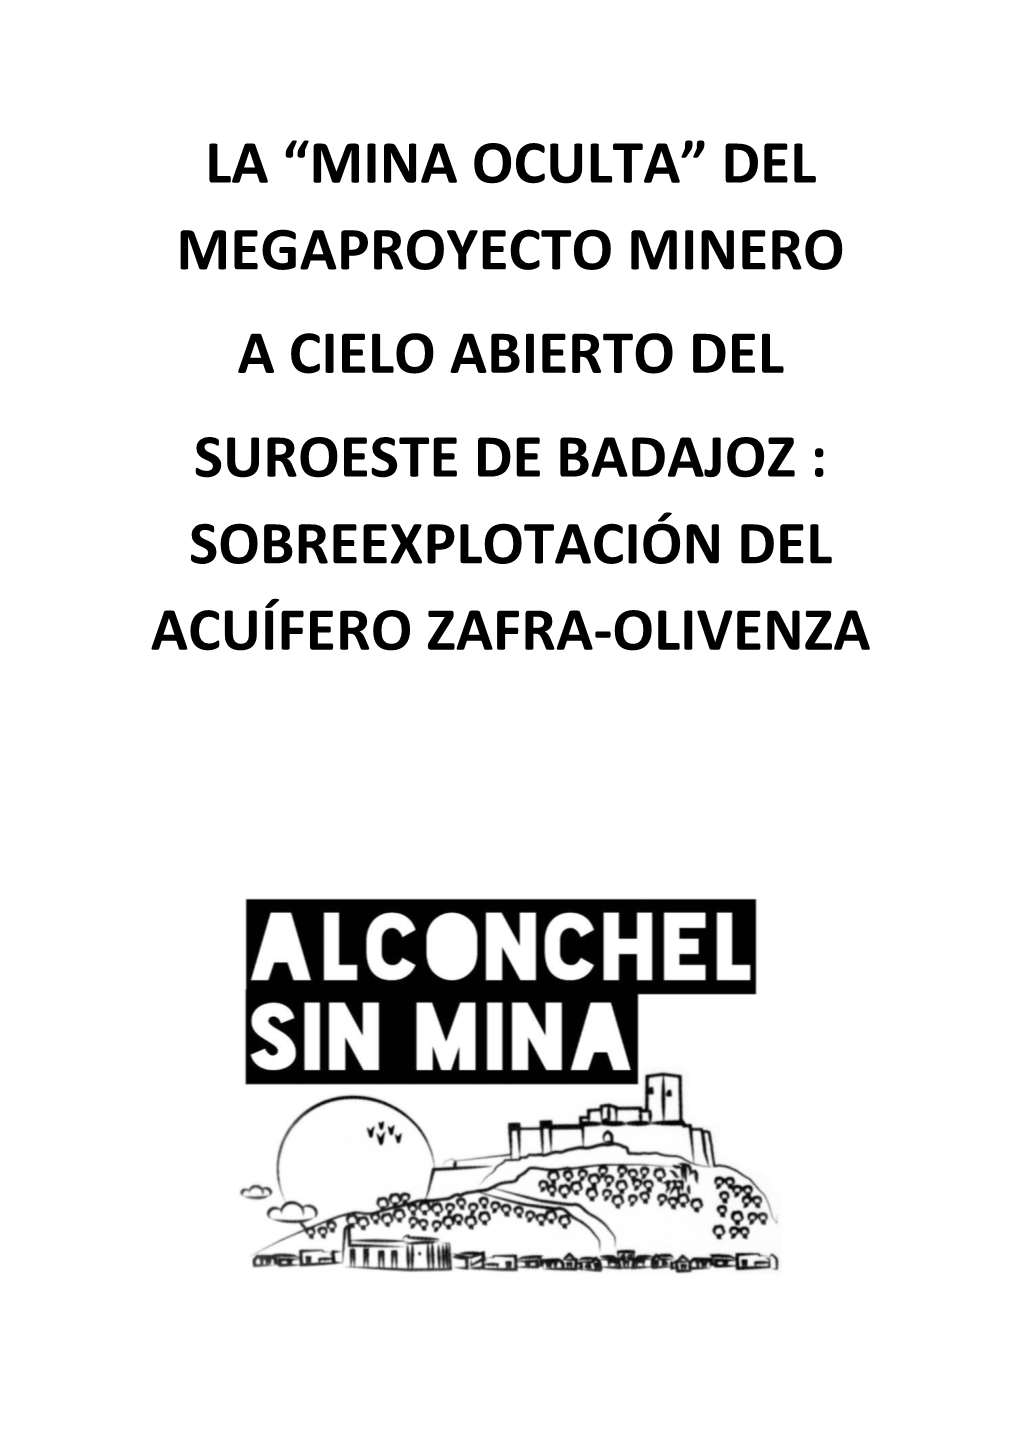 La “Mina Oculta” Del Megaproyecto Minero a Cielo Abierto Del Suroeste De Badajoz : Sobreexplotación Del Acuífero Zafra-Olivenza